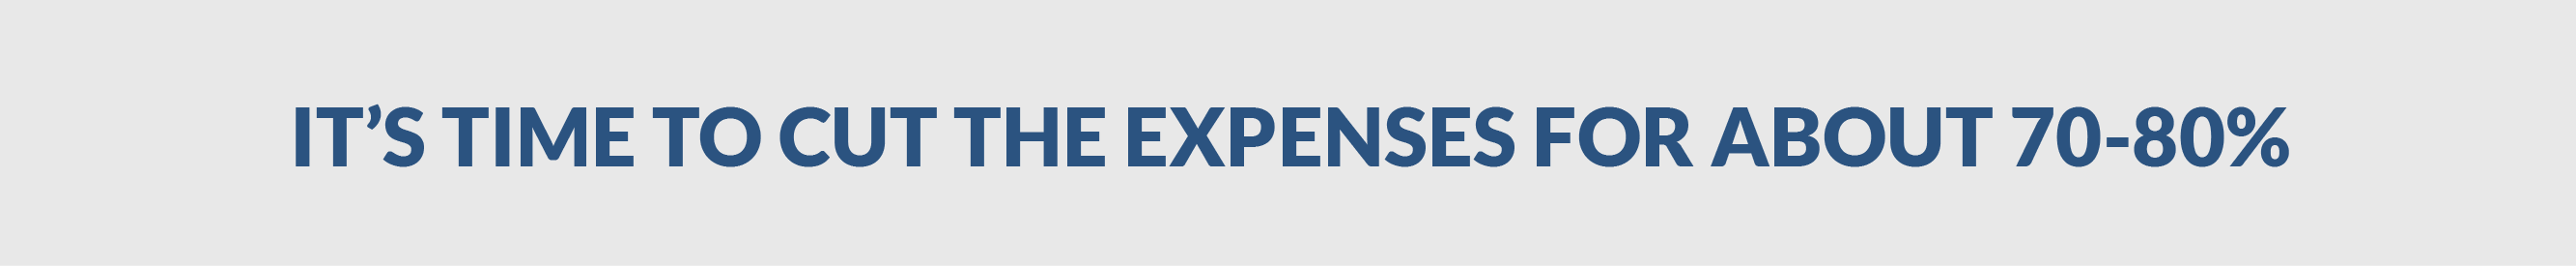 SME Page_5 Cut Expenses - EN